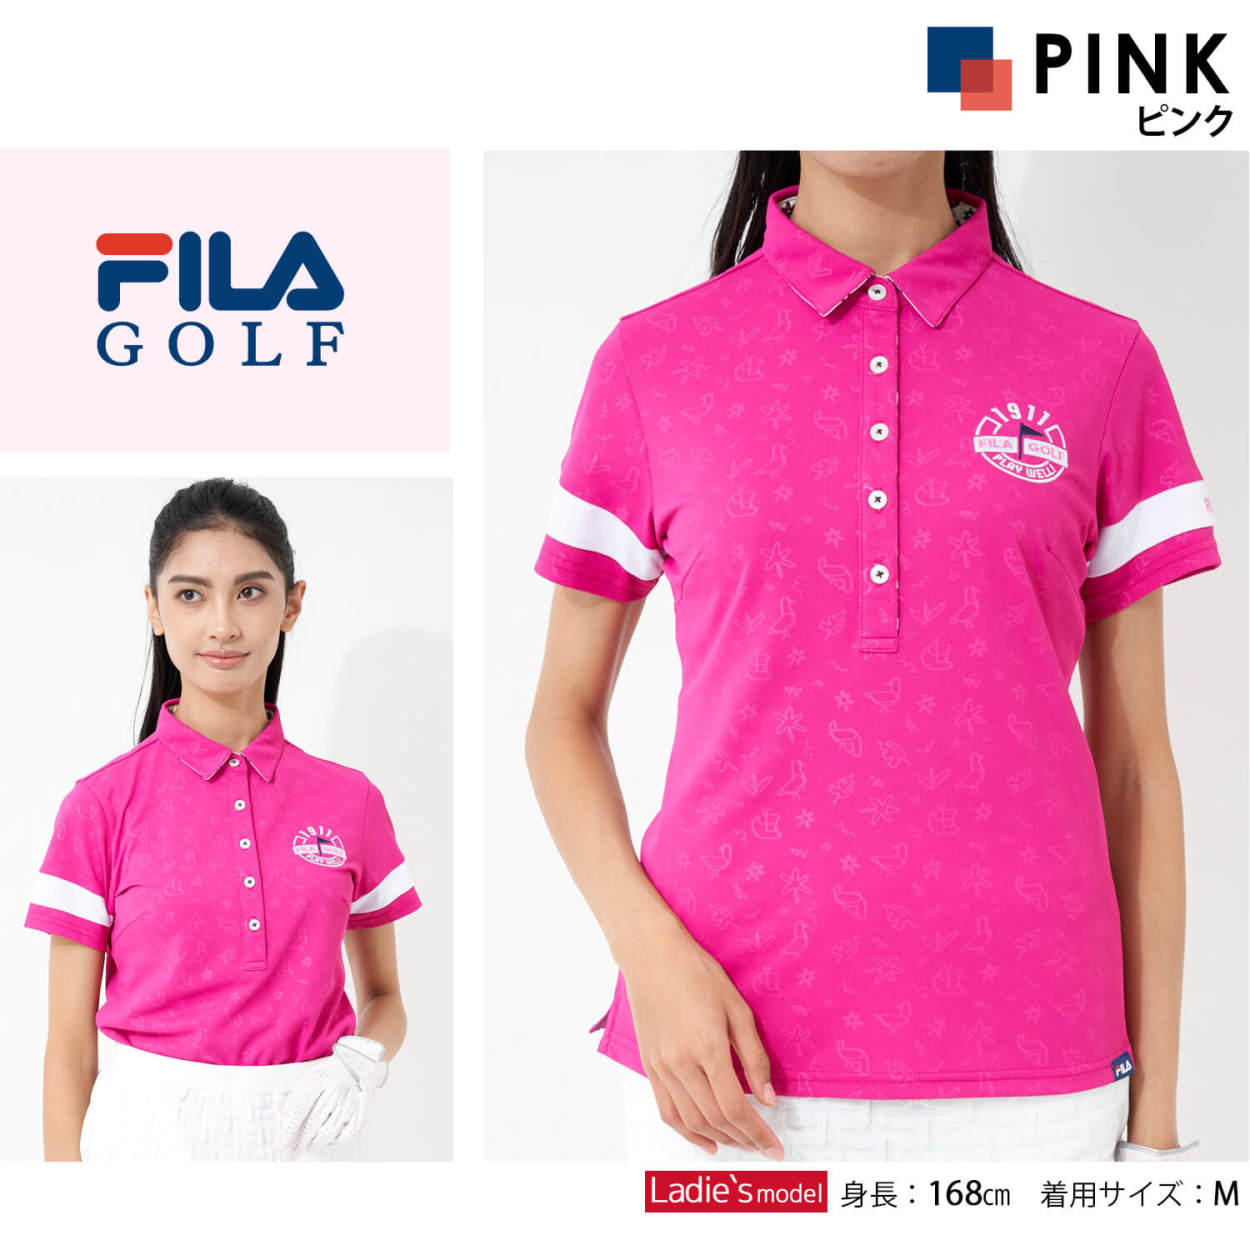 FILA GOLF フィラゴルフ ポロシャツ Mサイズ ピンク - ポロシャツ